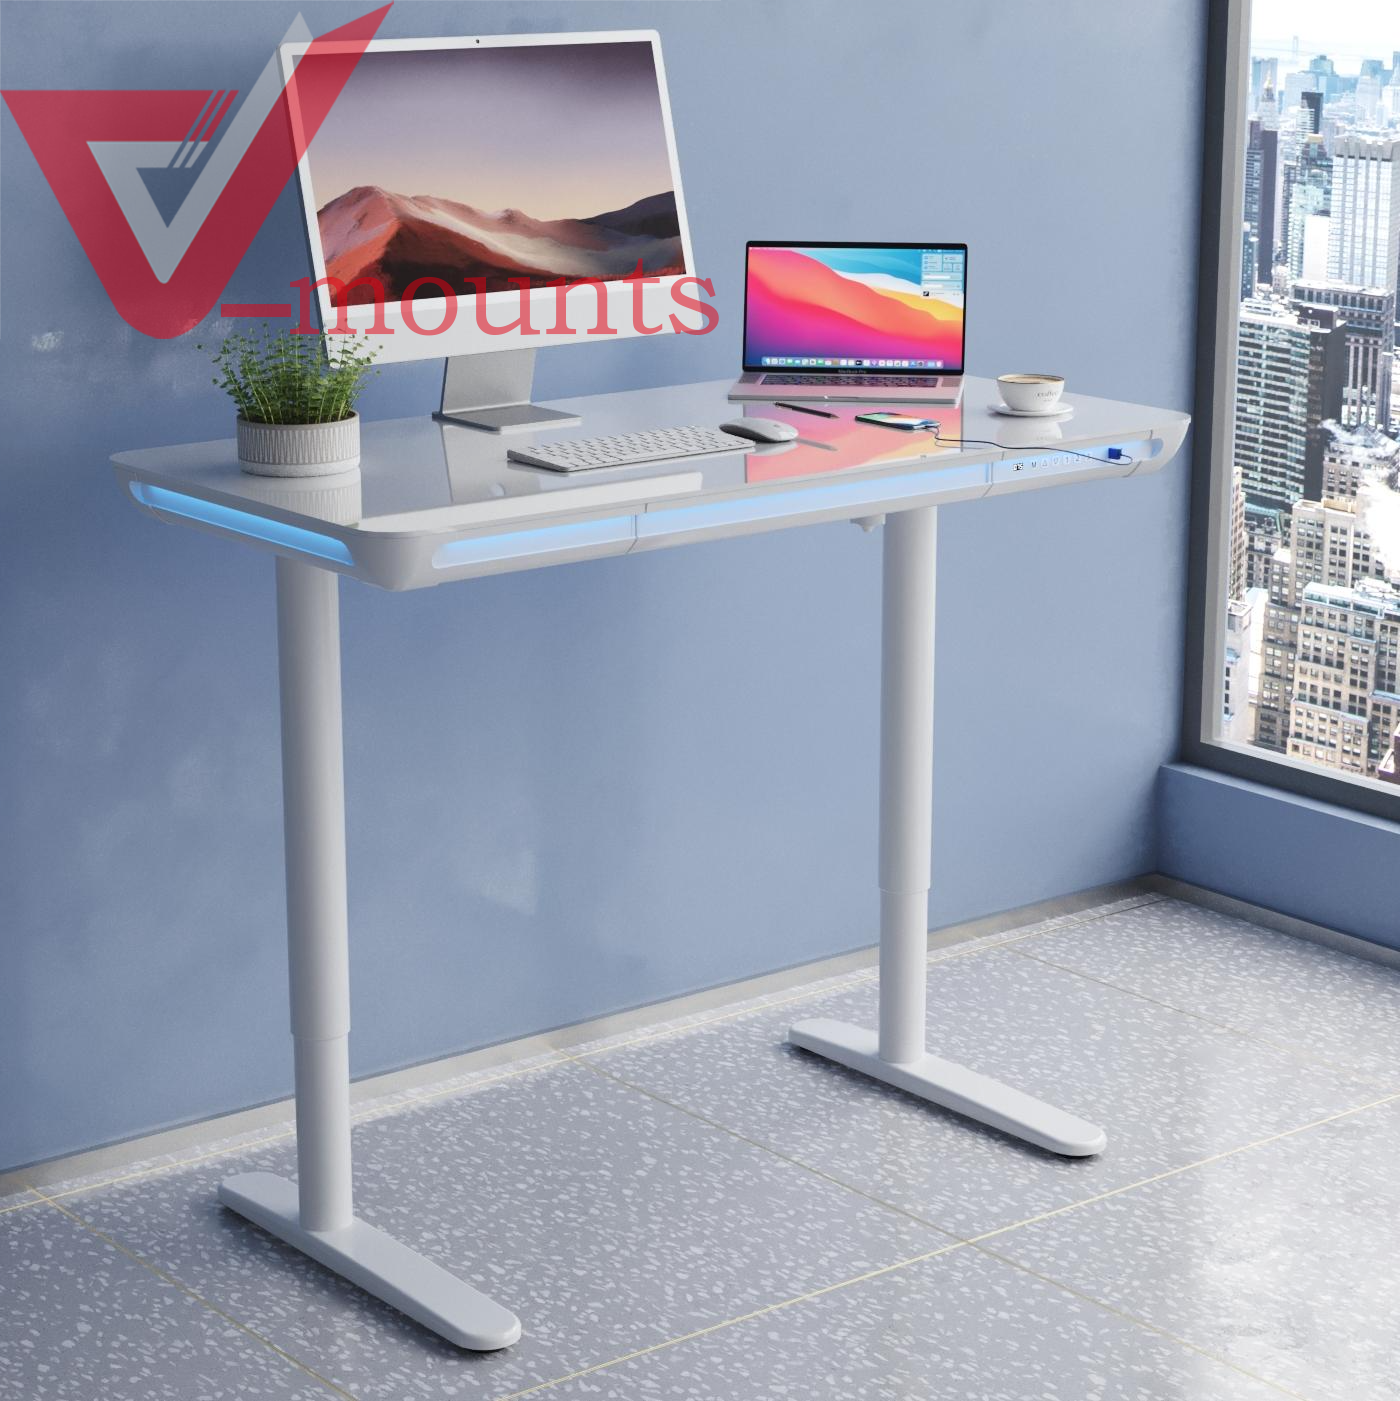 V-mounts Tempered Glass Electric Height Adjustable Desk VM-JSD5-03-G3